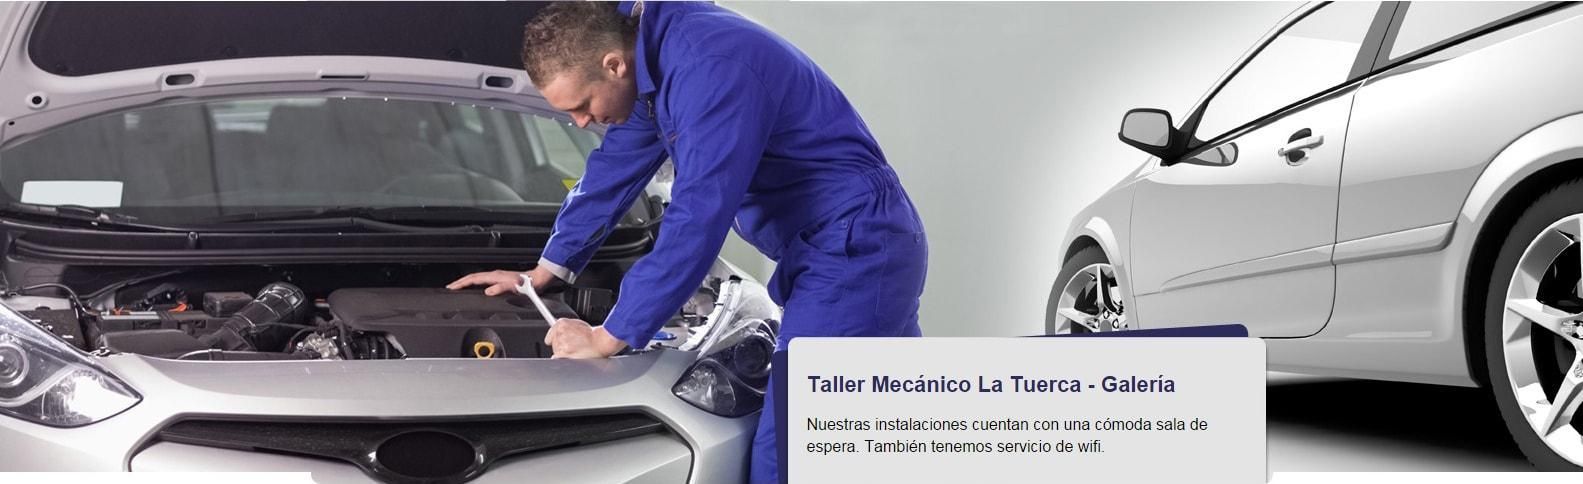 Taller Mecánico La Tuerca - Mantenimiento y Reparación de vehiculos